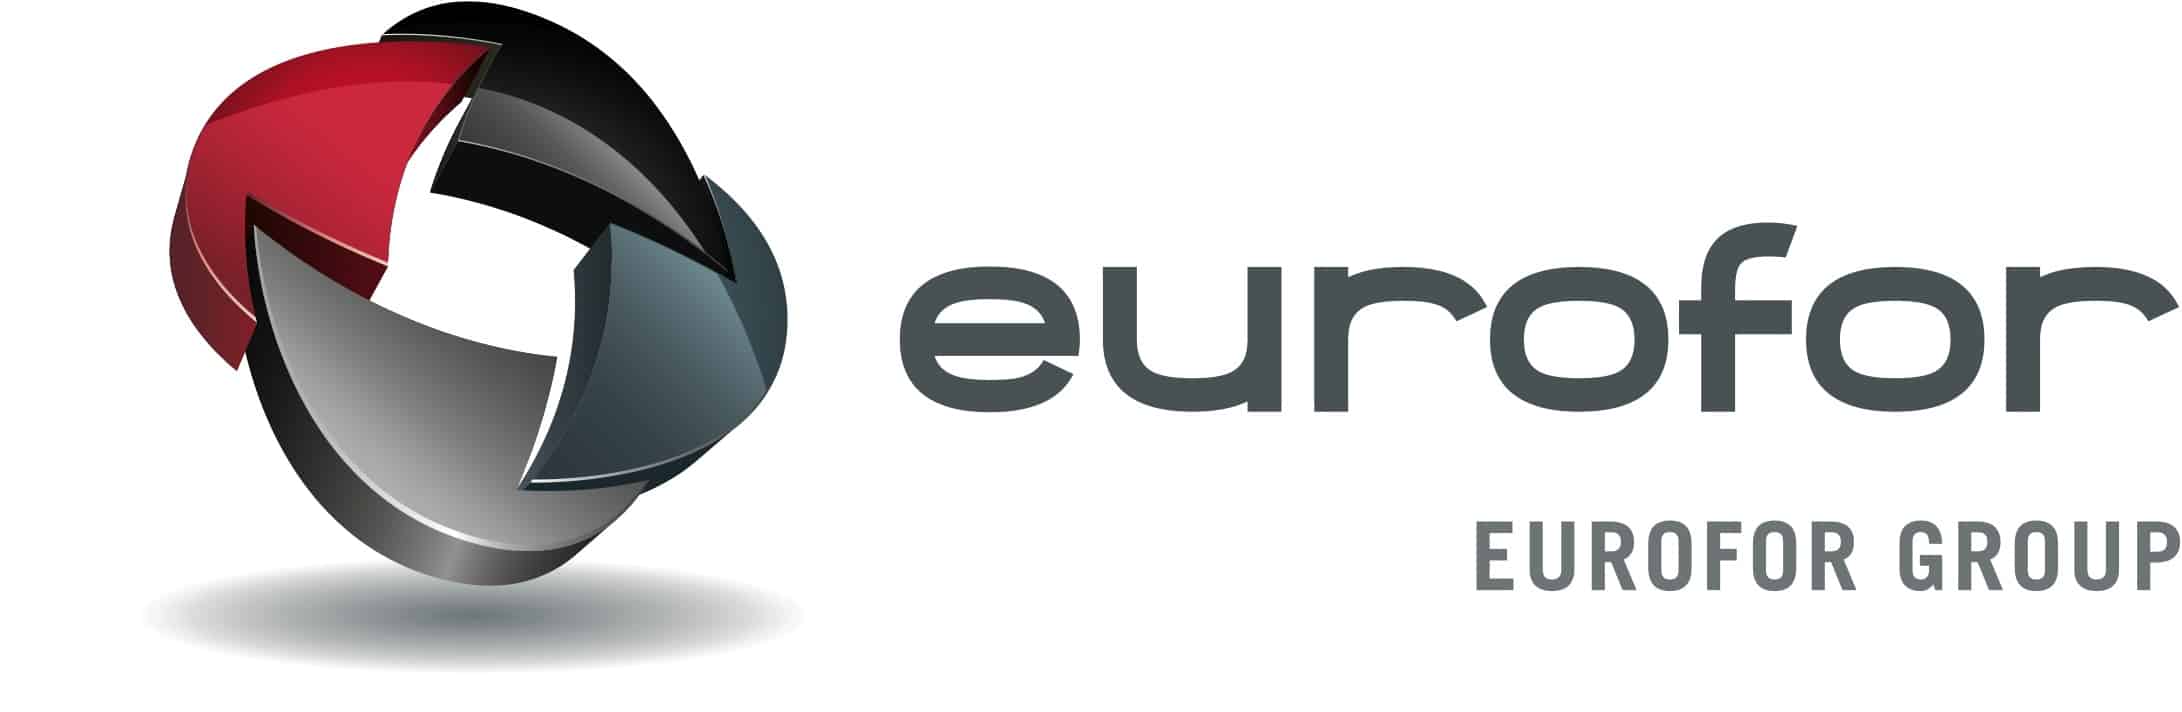 Eurofor Group